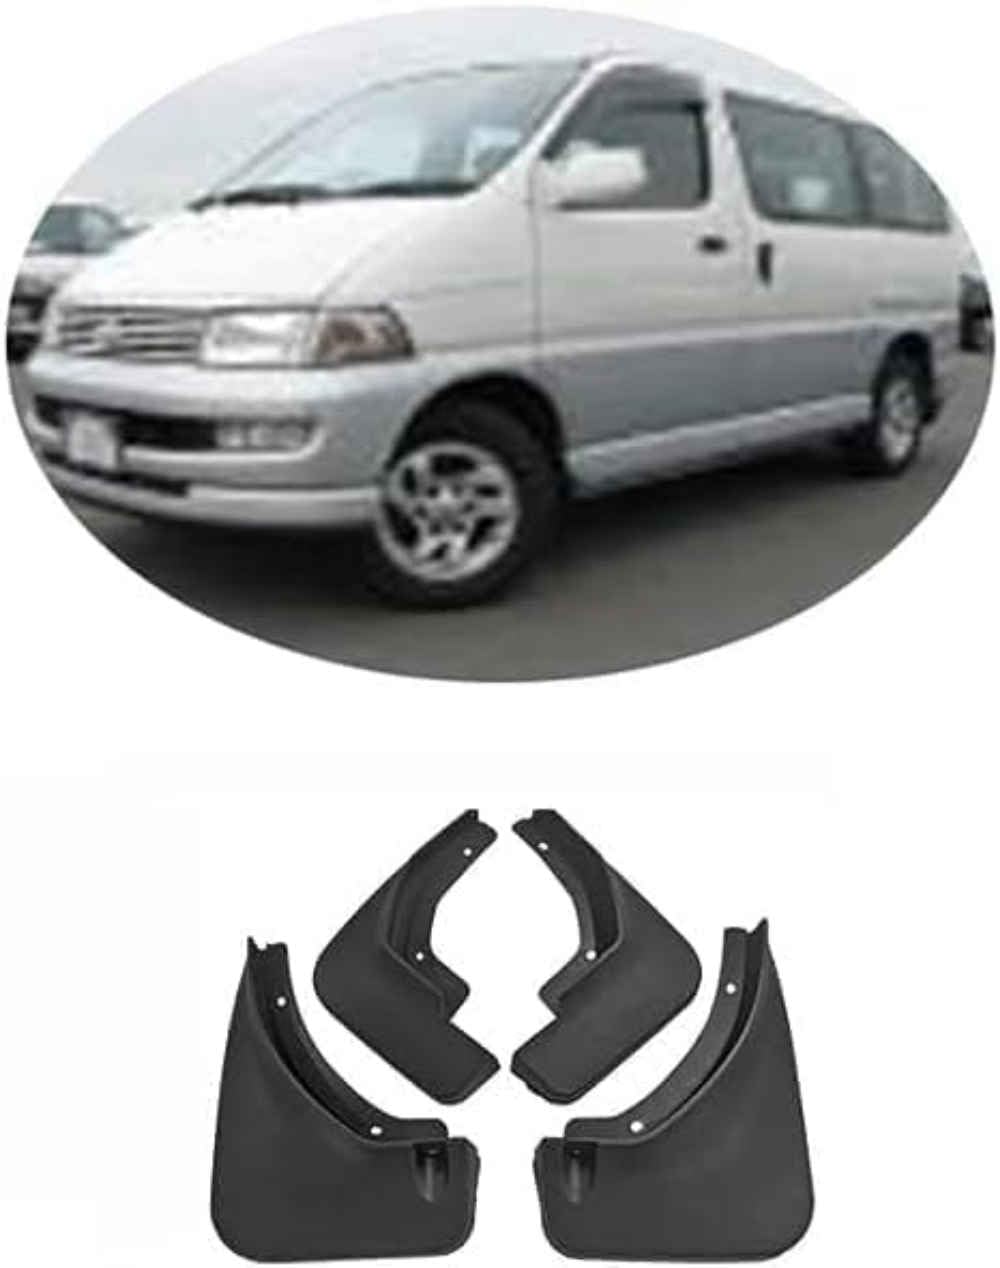 Auto-Kotflügel für Toy-OTA Hiace 1992-2003, Schmutzfänger für vorne und hinten, Spritzschutz, Autozubehör von SureRekS